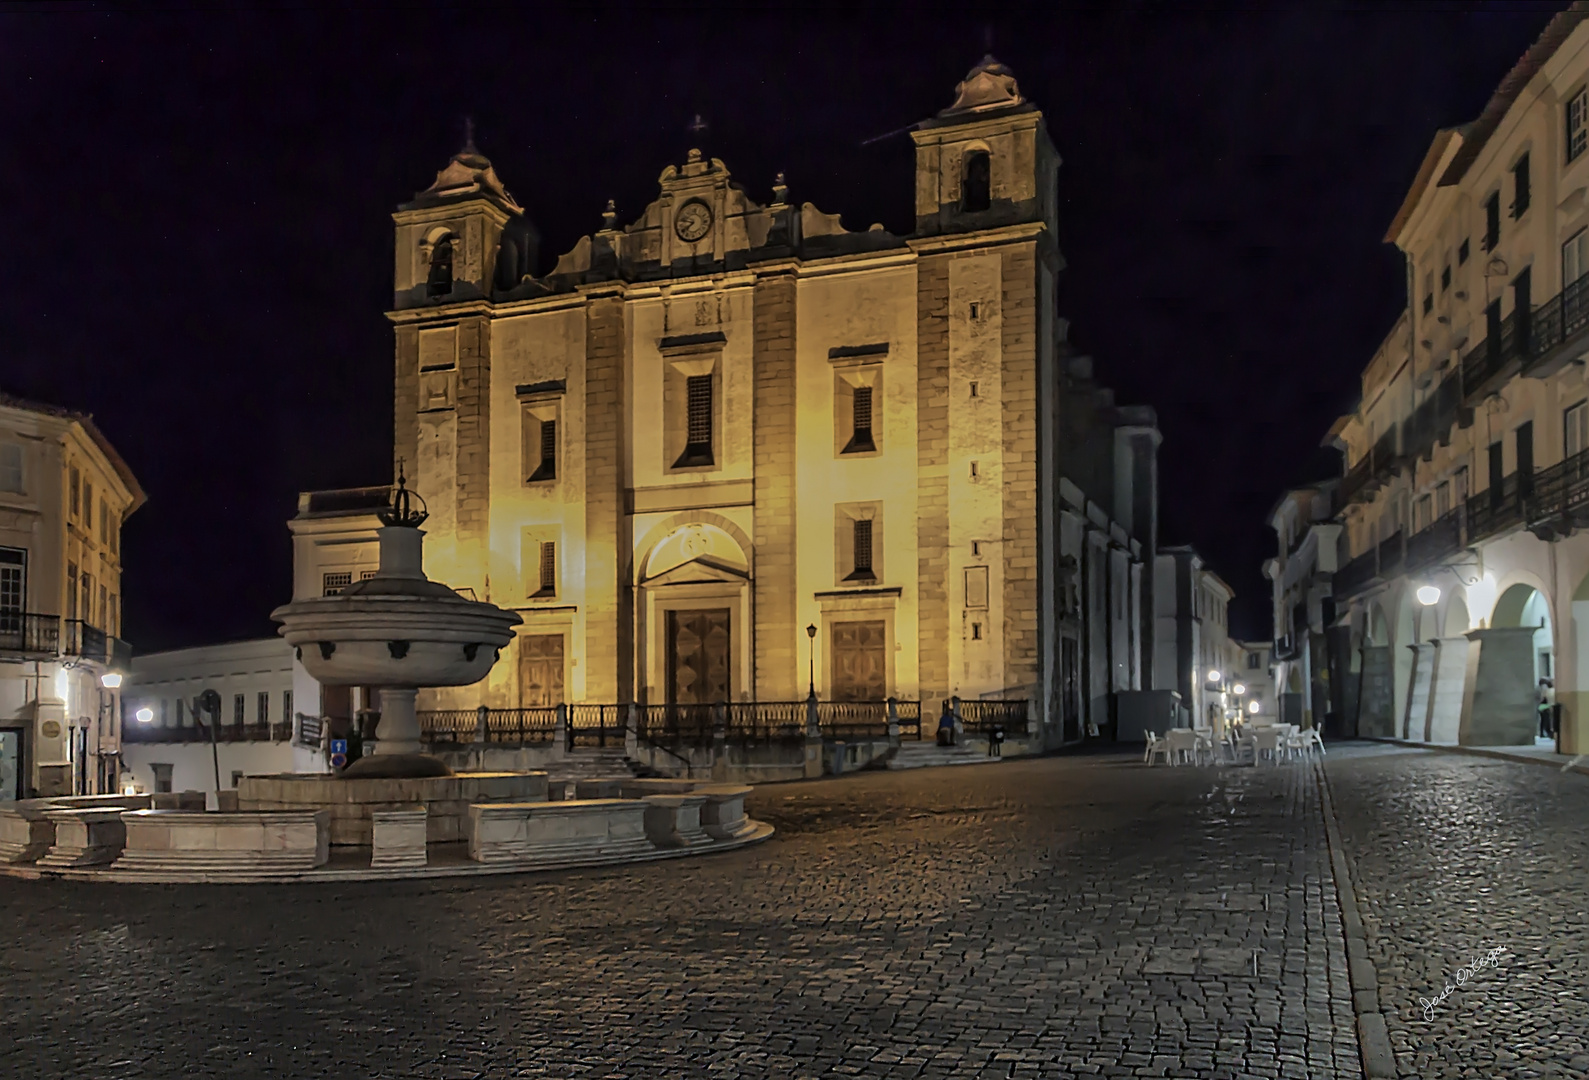 Plaza de Giraldo e Iglesia de Santo Antao, Evora (Portugal)